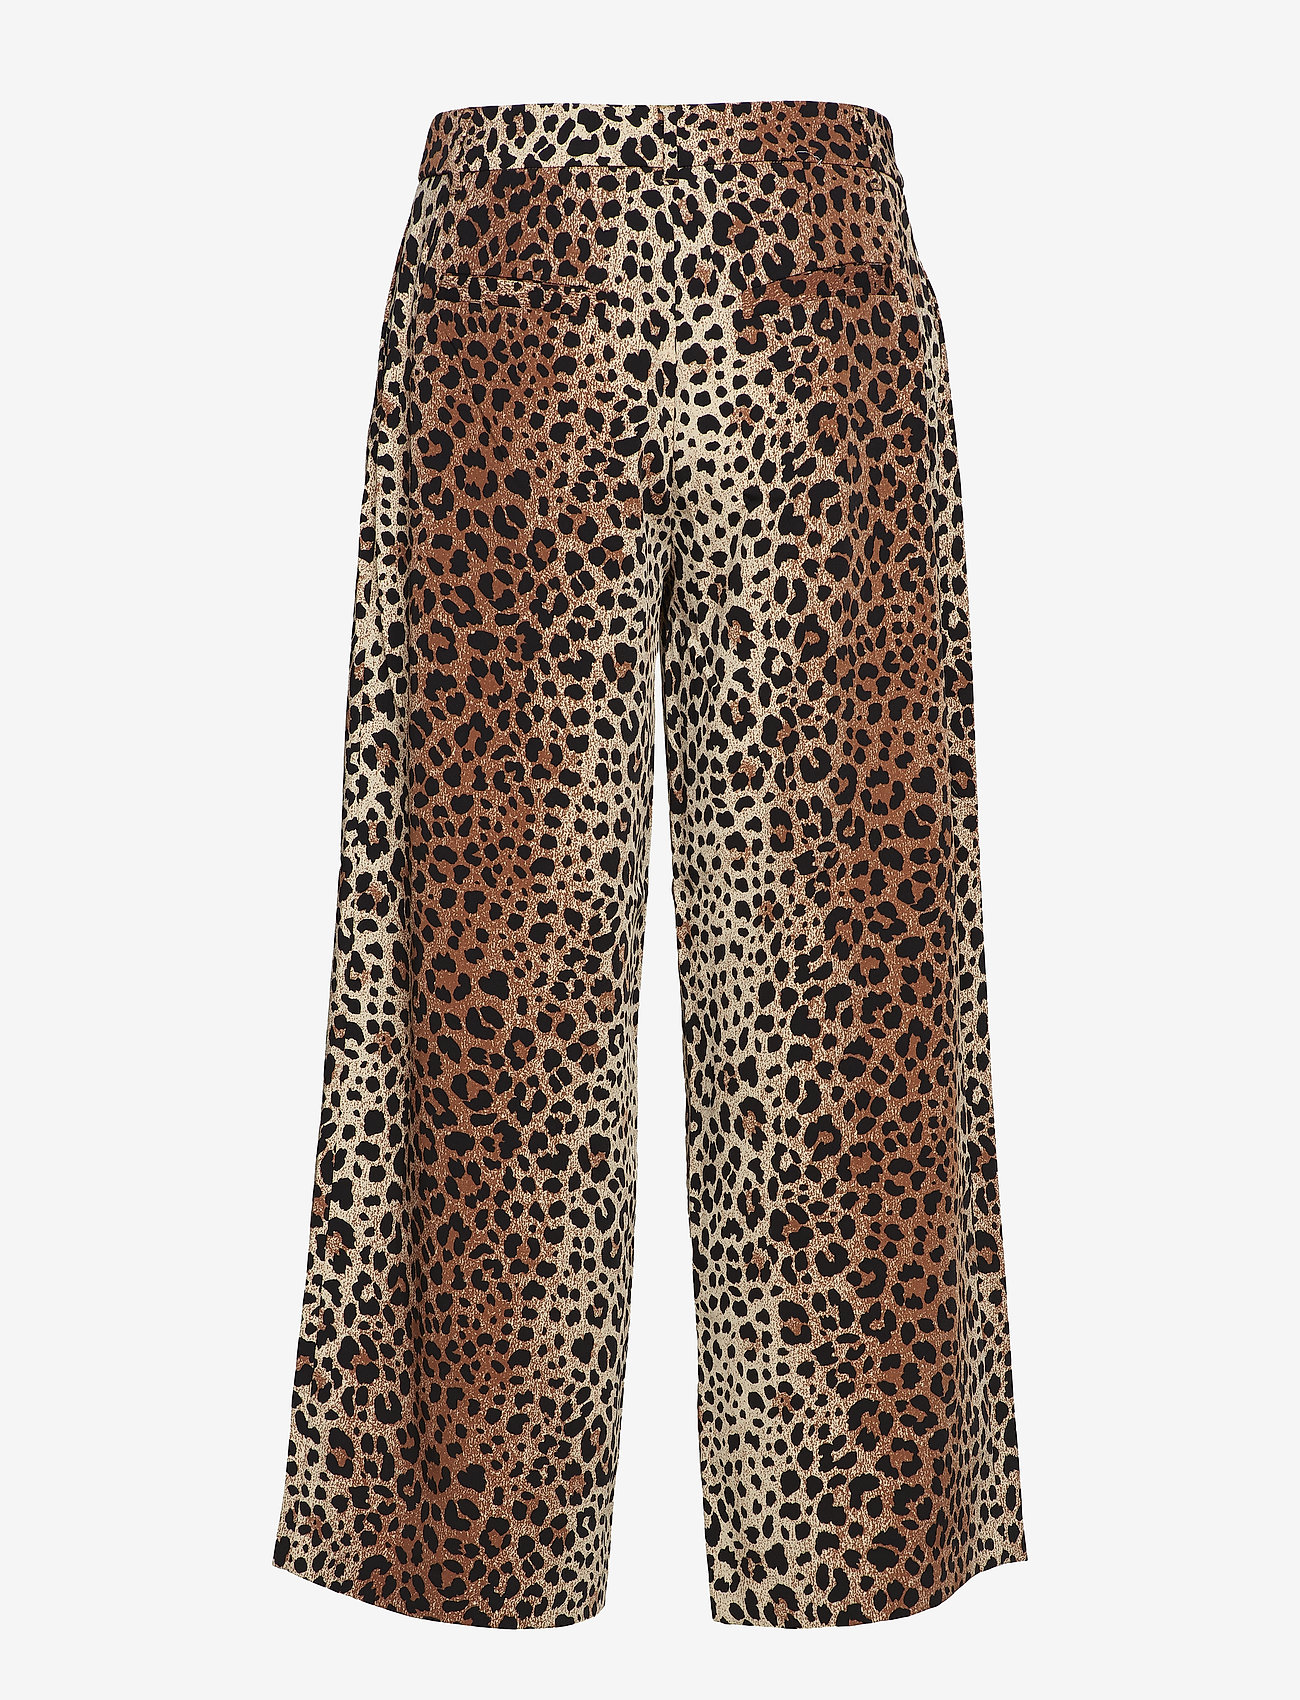 2nd One - Eloise 442 Crop, Leopard, Pants - wide leg trousers - leopard - 1